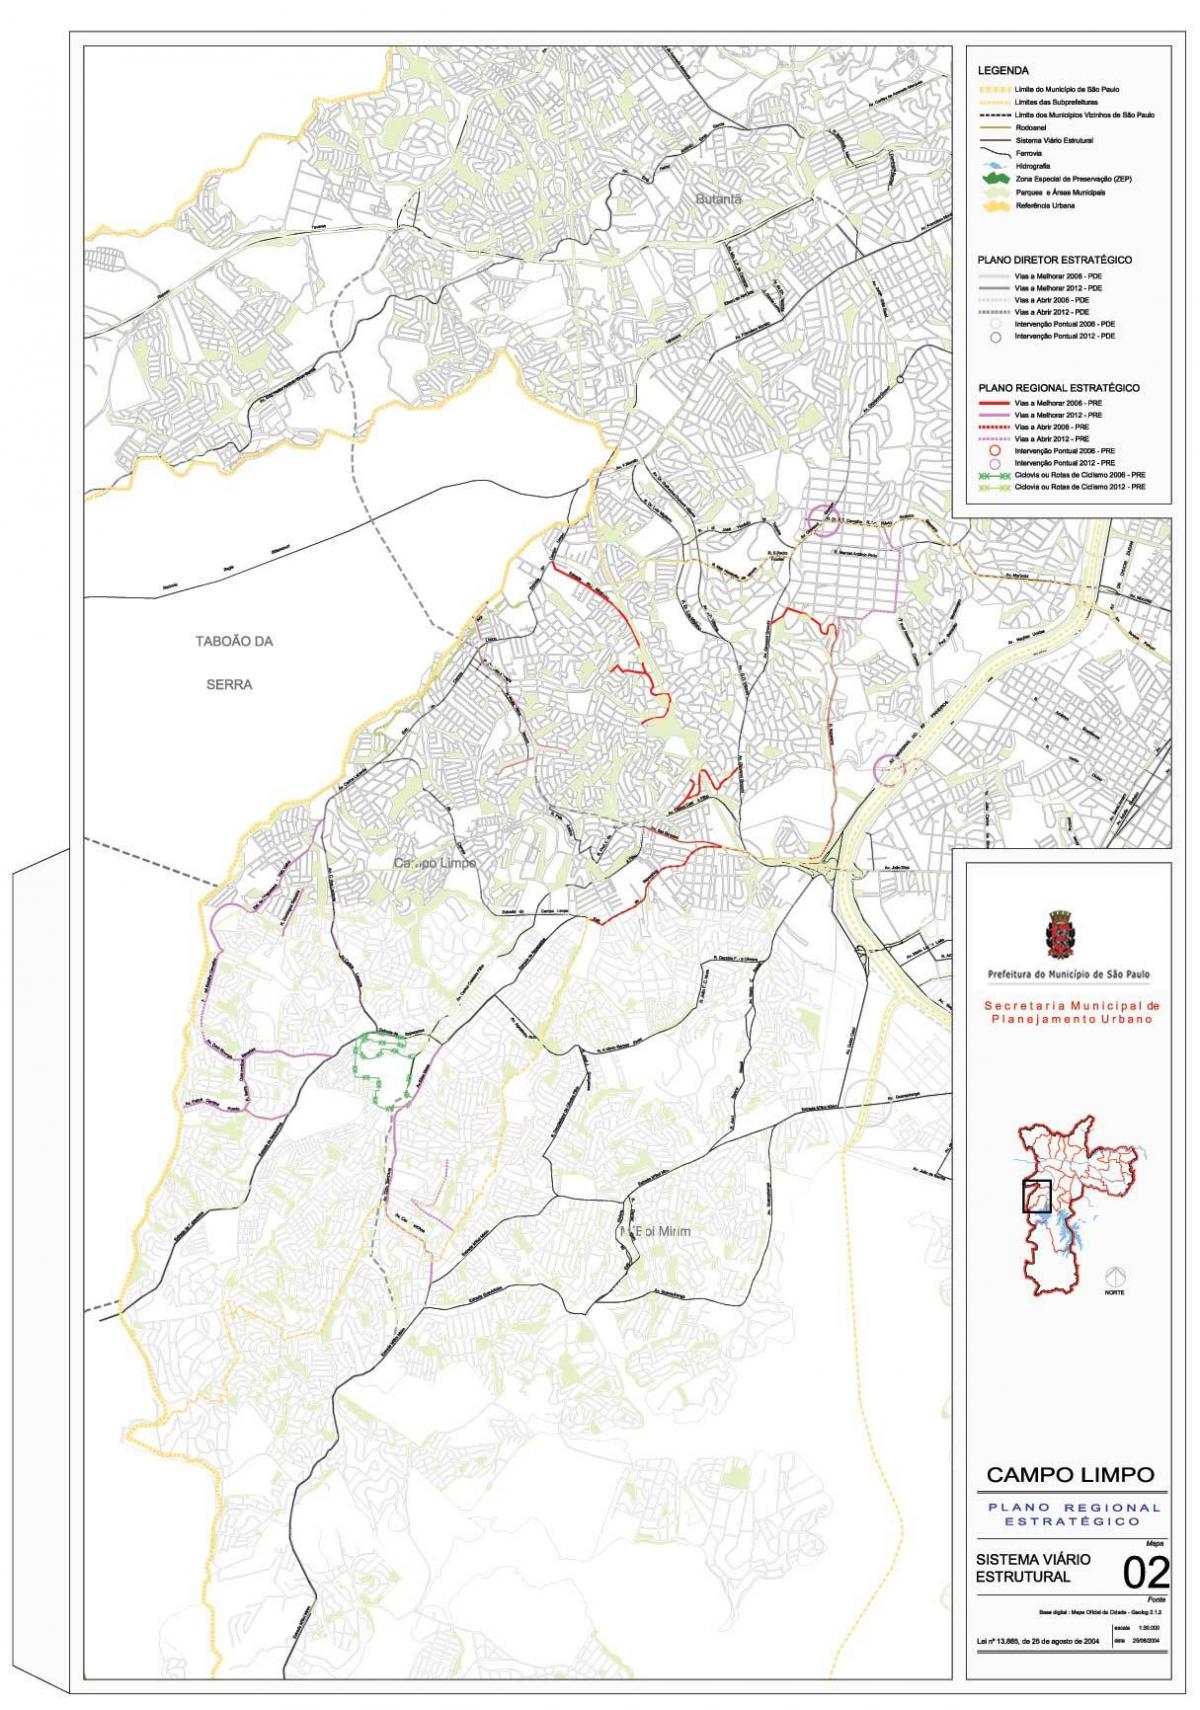 Kart av Campo Limpo São Paulo - Veier